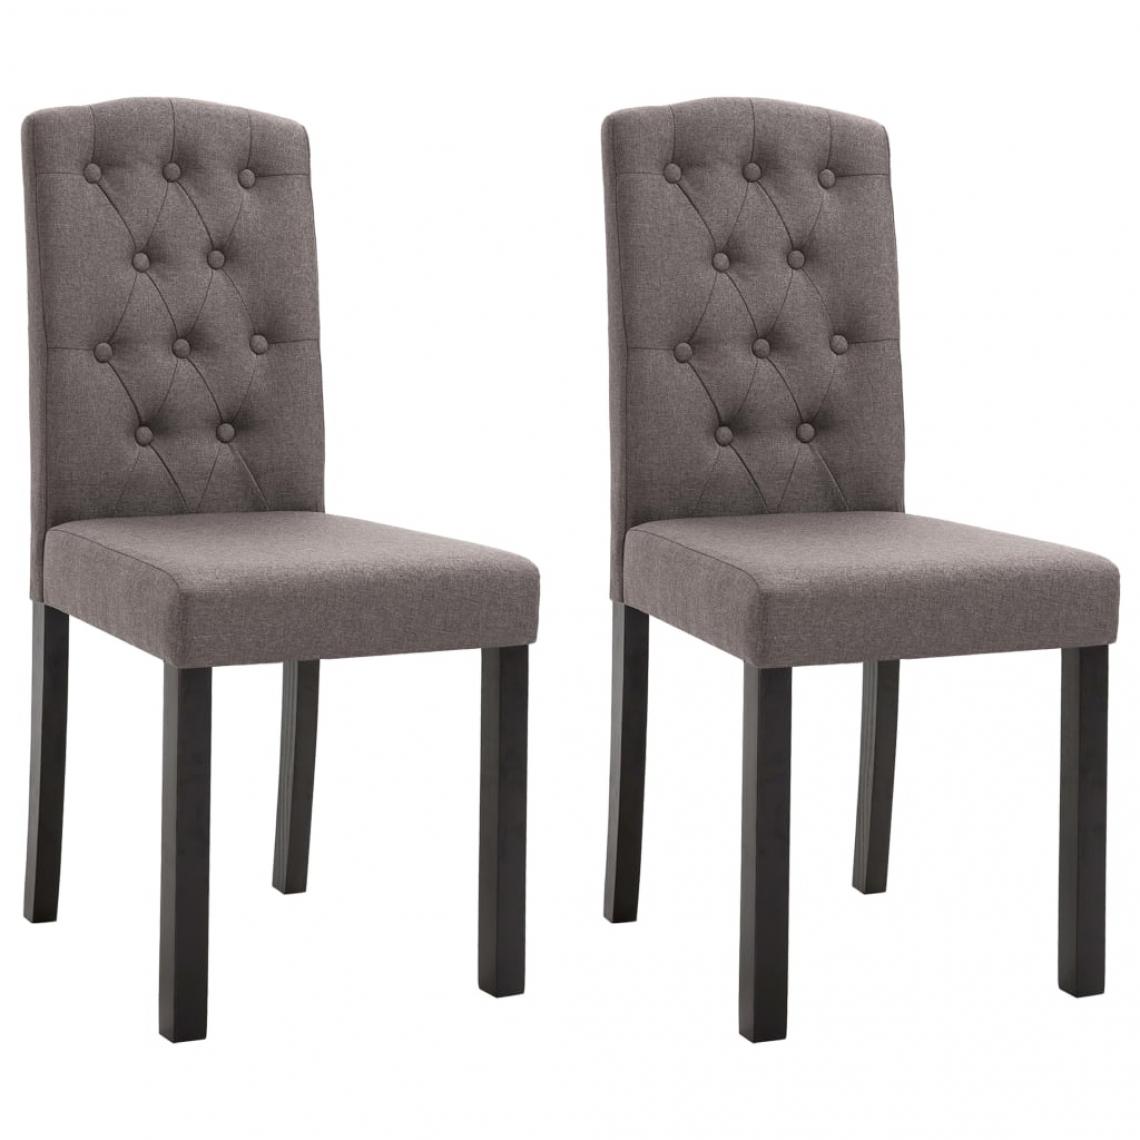 Decoshop26 - Lot de 2 chaises de salle à manger cuisine design classique tissu taupe CDS021046 - Chaises